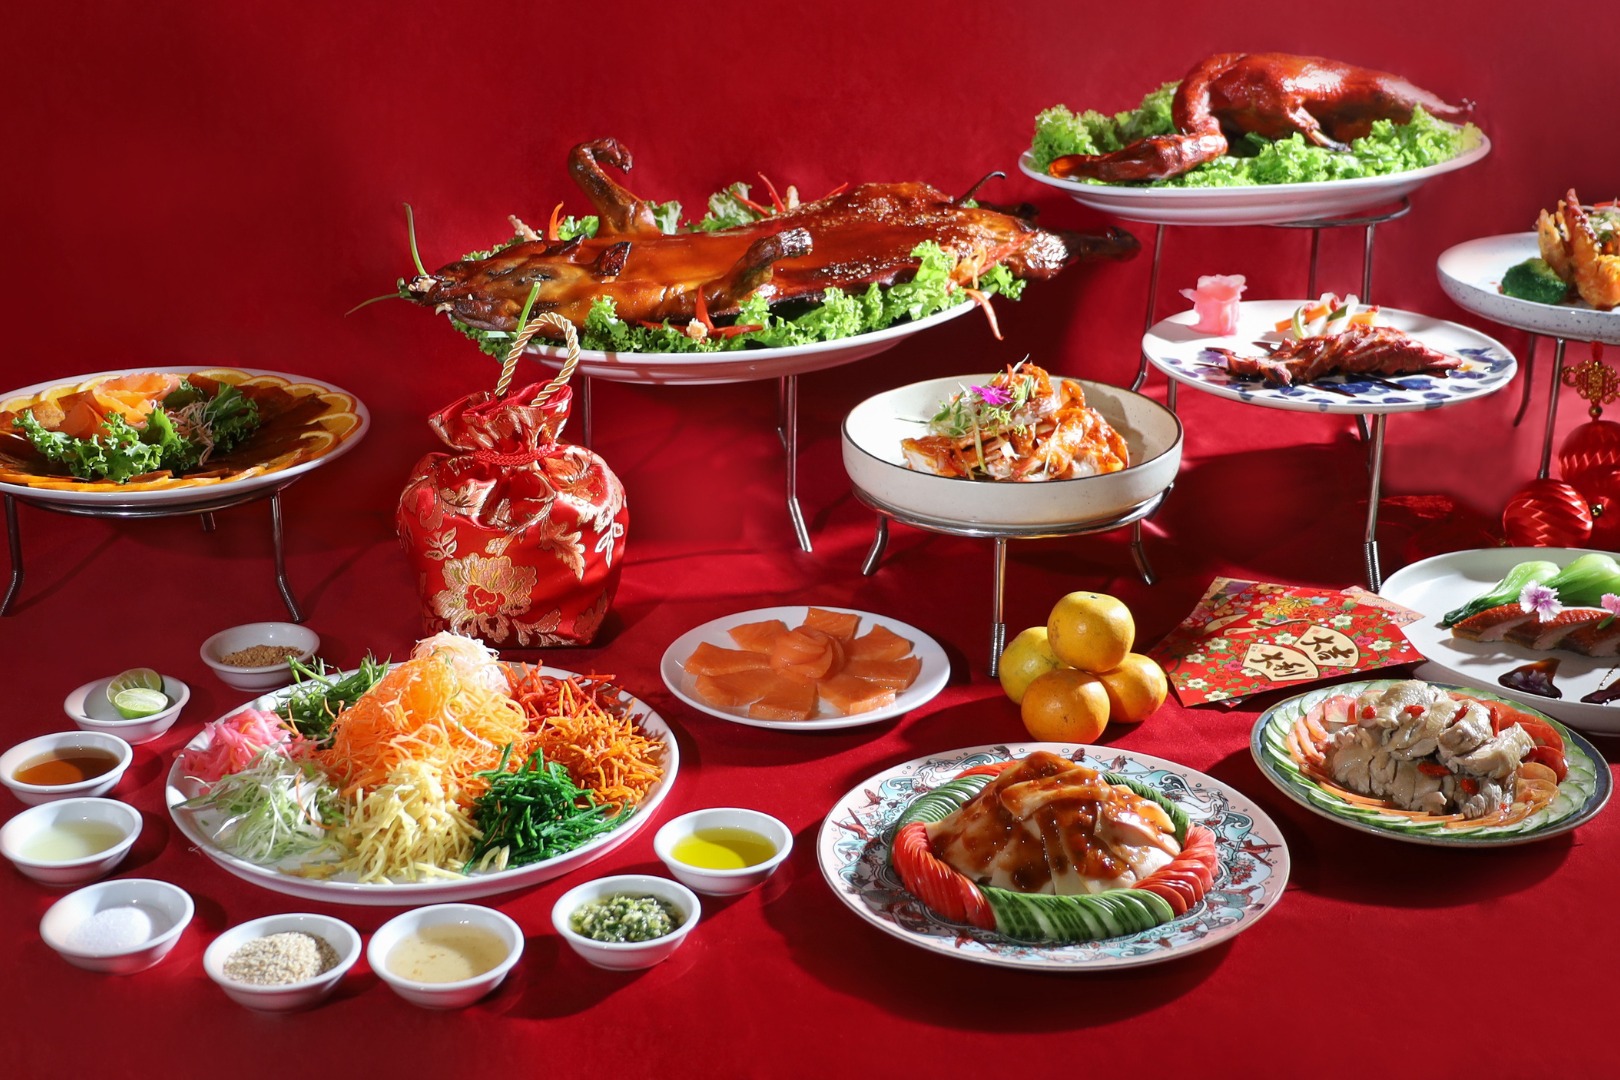 ข่าวอาหาร, เครื่องดื่ม - Embark on a culinary journey this Year of the Dragon at Amari Bangkok